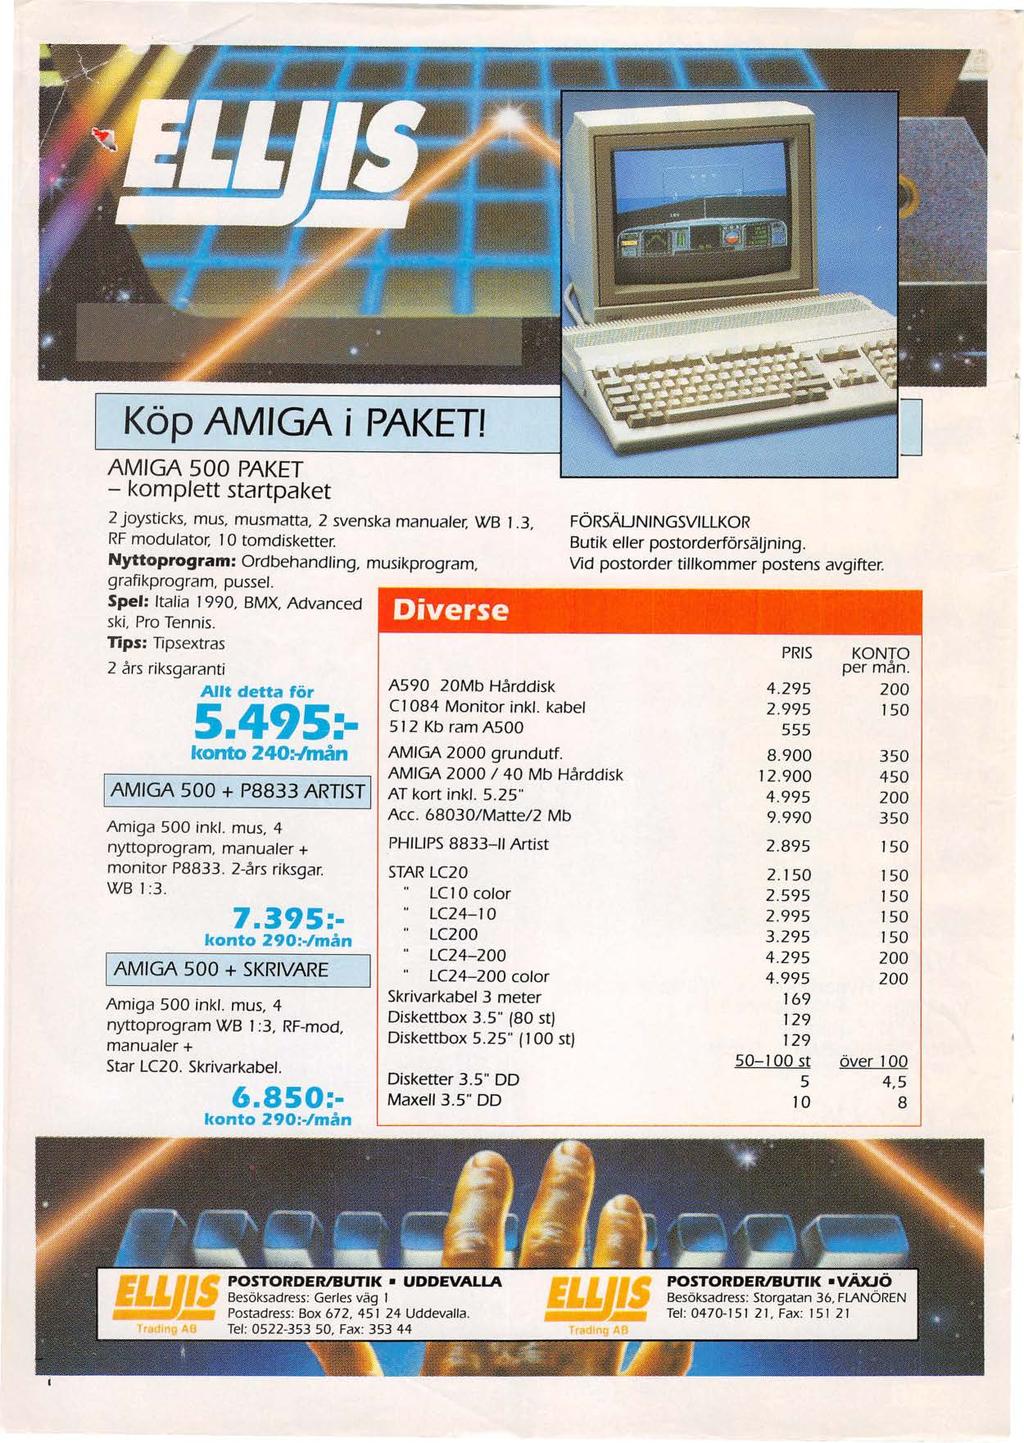 Köp AMIGA i PAKETI A MIGA 500 PAKET - komplett startpaket 2 joysticks, mus, musmatta, 2 svenska manualer, WB 1.3, RF modulator, 10 tomdisketter.